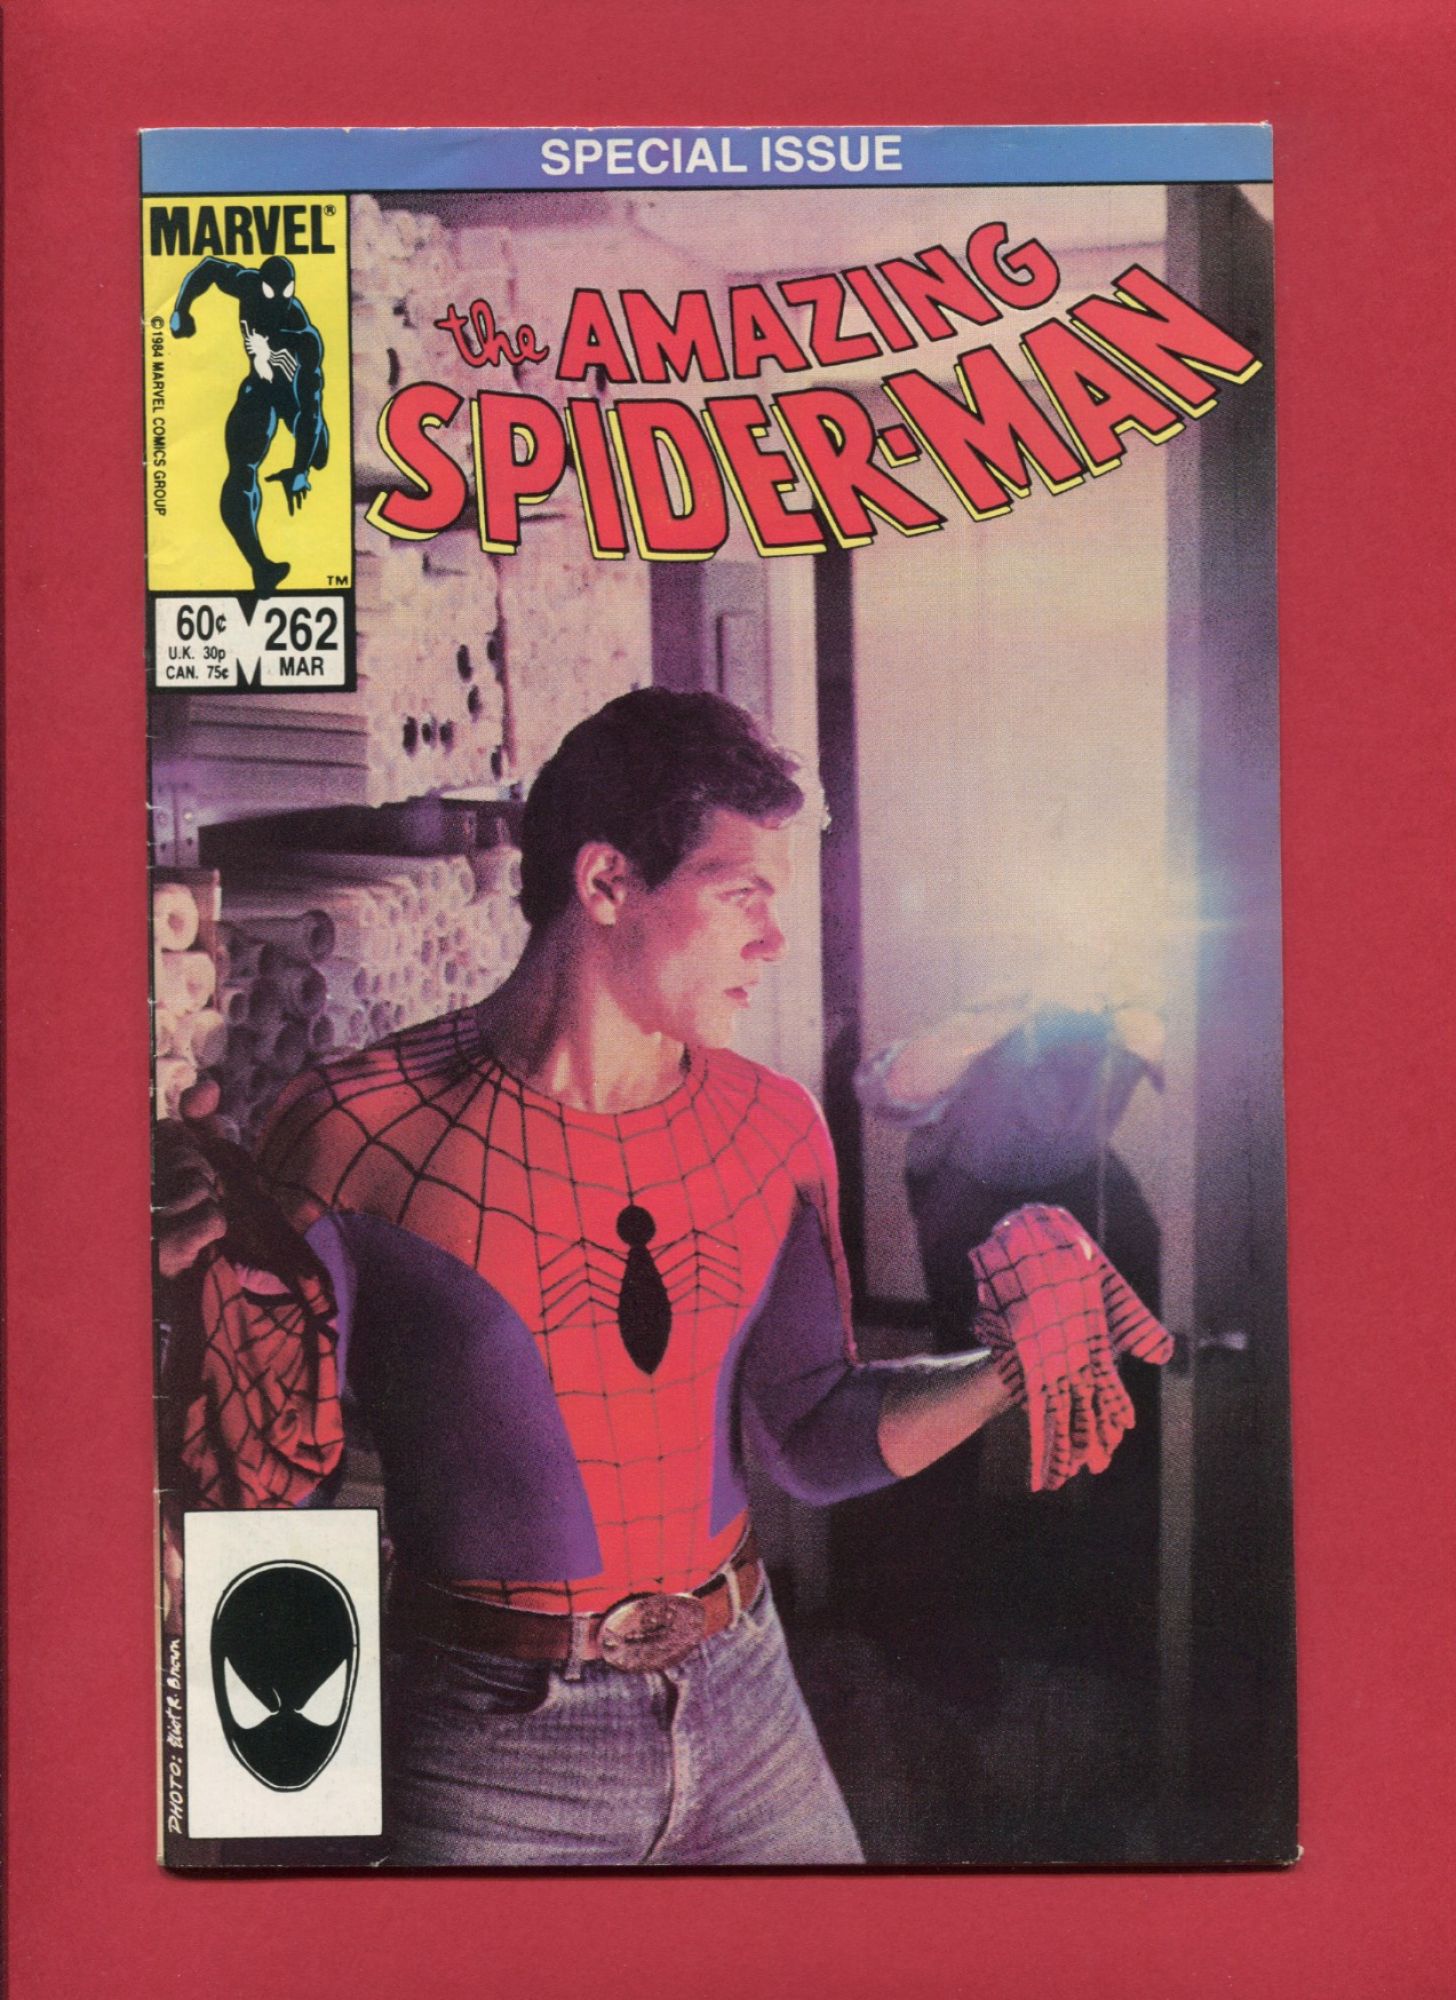 Amazing Spider-Man #262, Mar 1985, 5.0 VG/FN